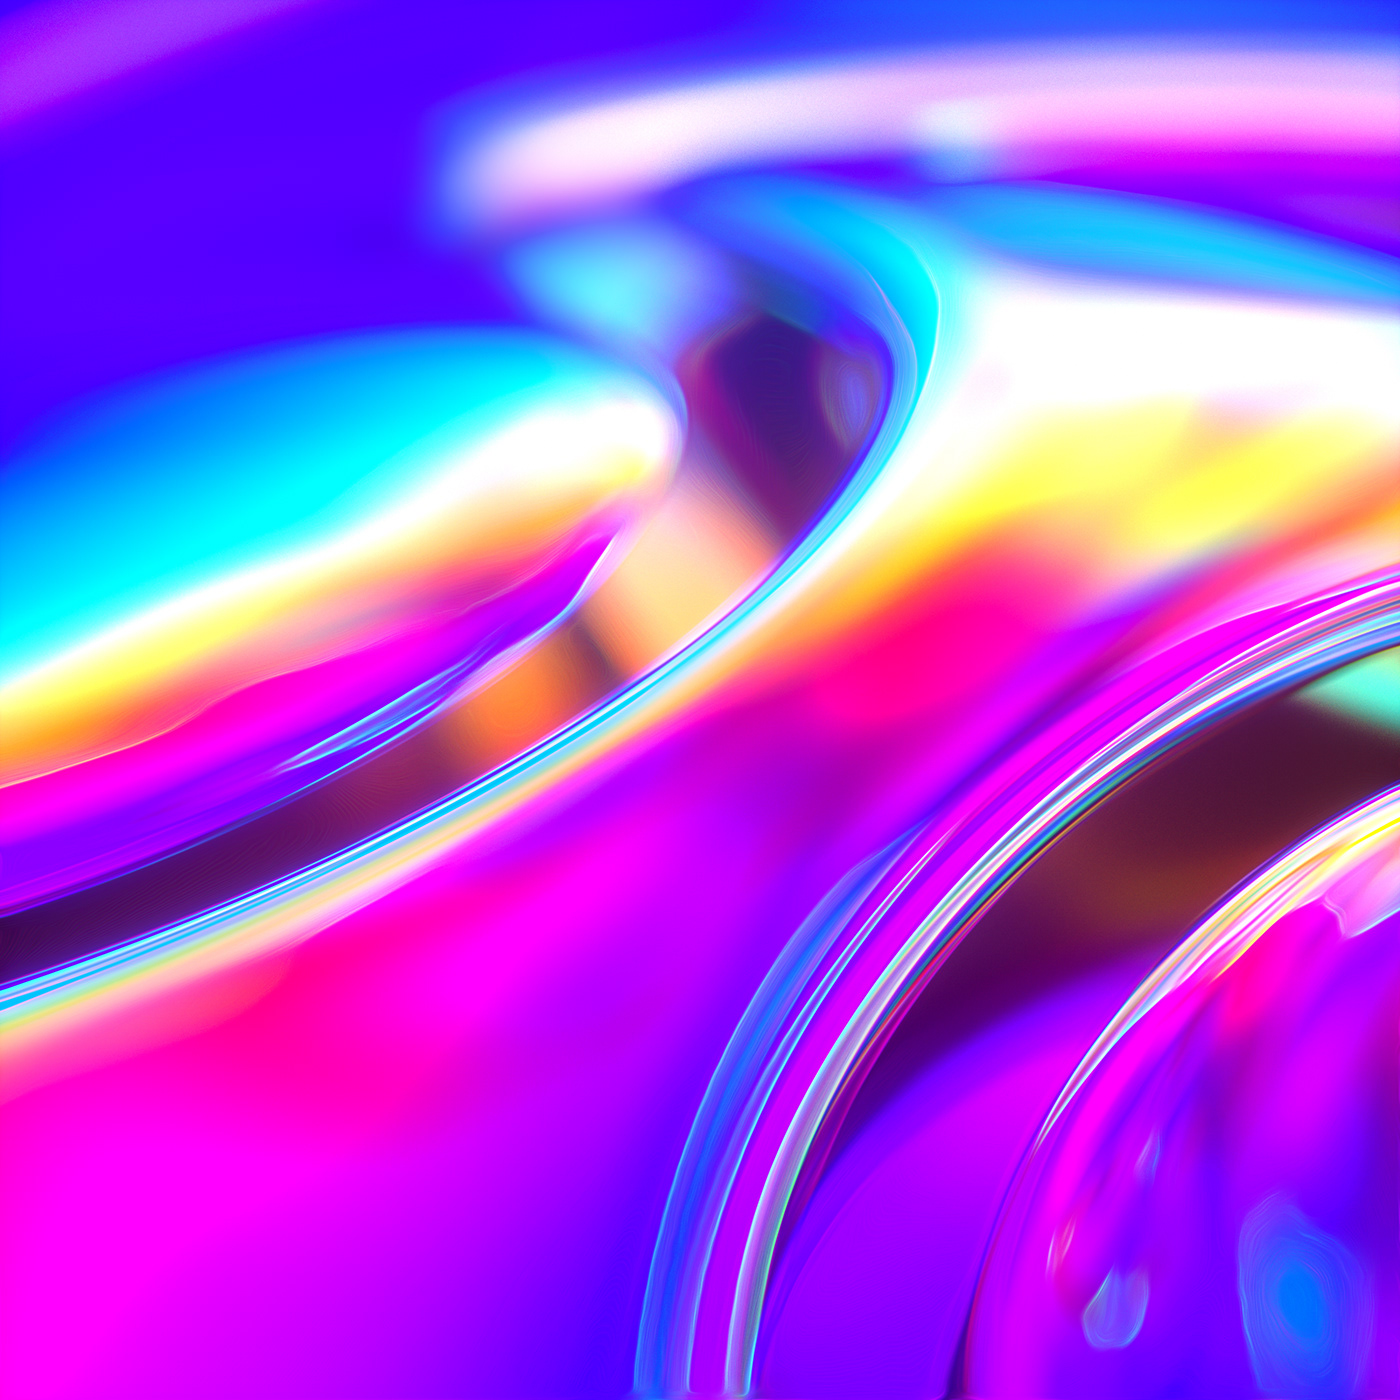 abstract 3D rainbow octane weird phone wallpaper digital art psychedelic